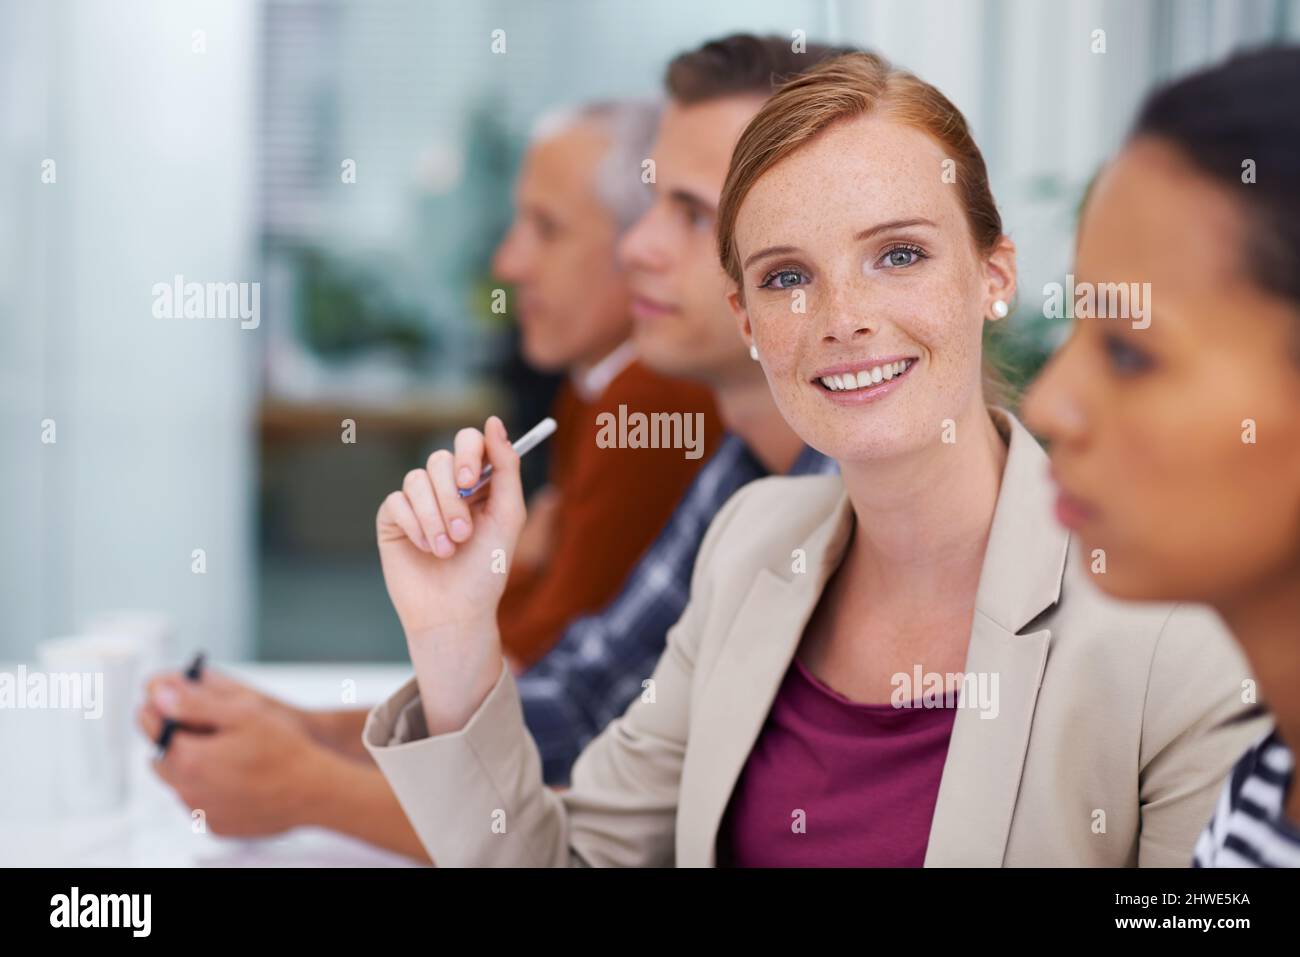 Mit diesem Team an die Spitze. Aufnahme einer Geschäftsfrau, die während eines Treffens mit ihren Kollegen lächelt. Stockfoto